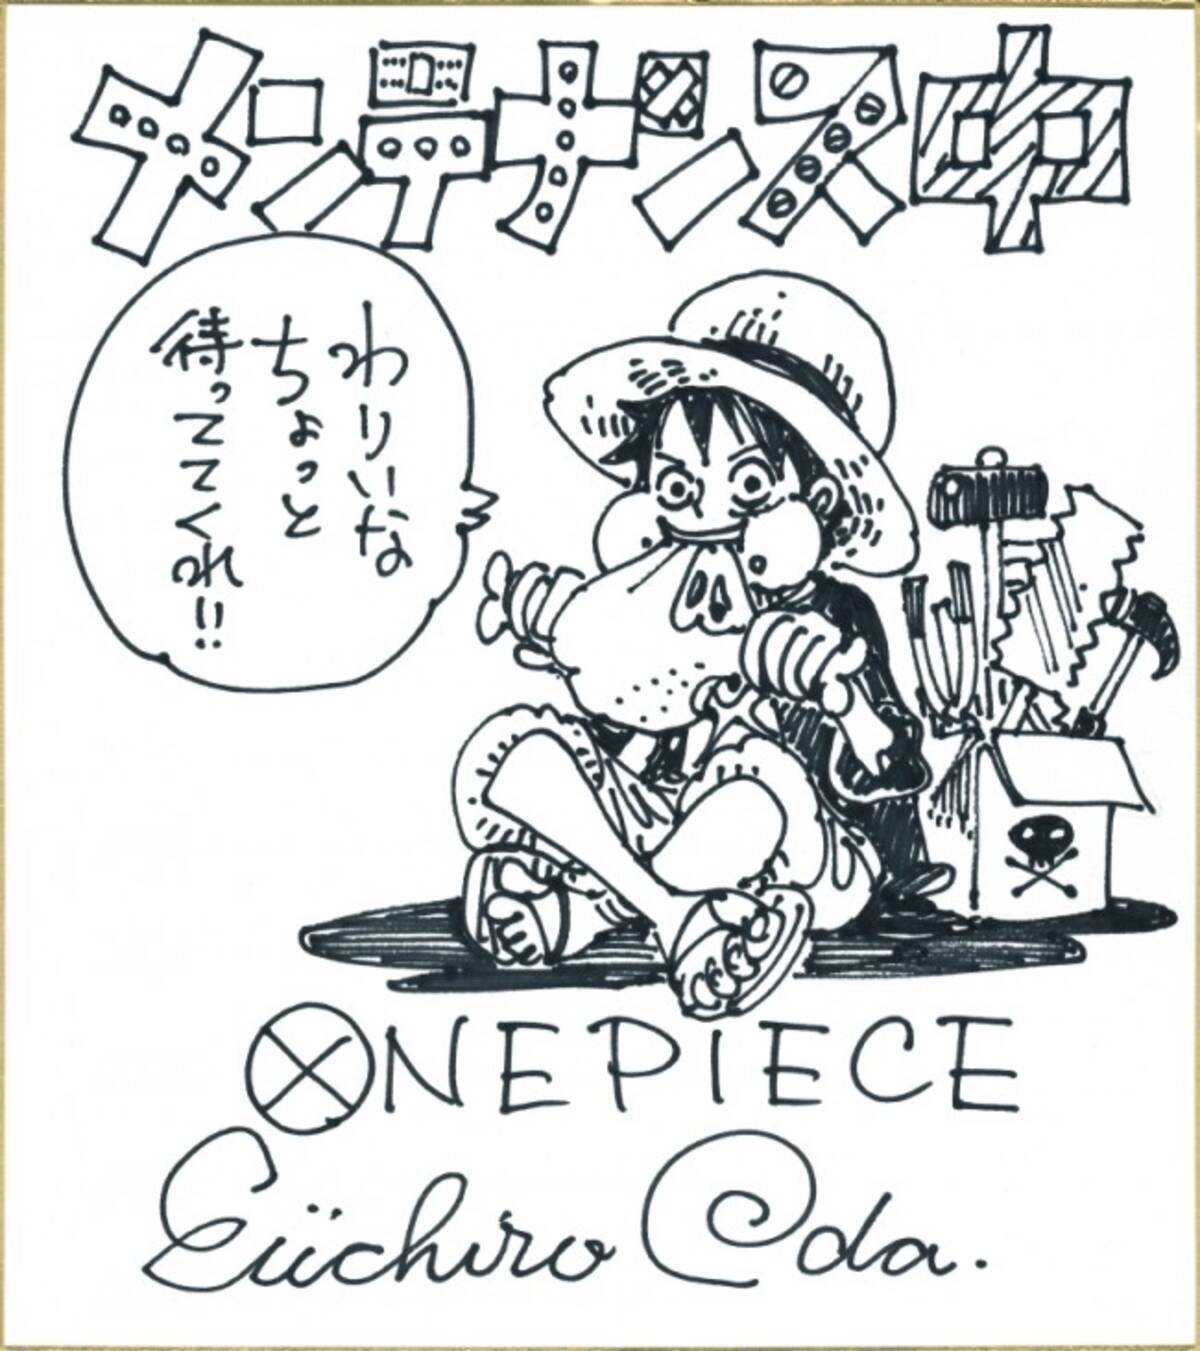 One Piece 作者 尾田栄一郎氏 扁桃腺切除の手術のため休載を発表 14年5月28日 エキサイトニュース